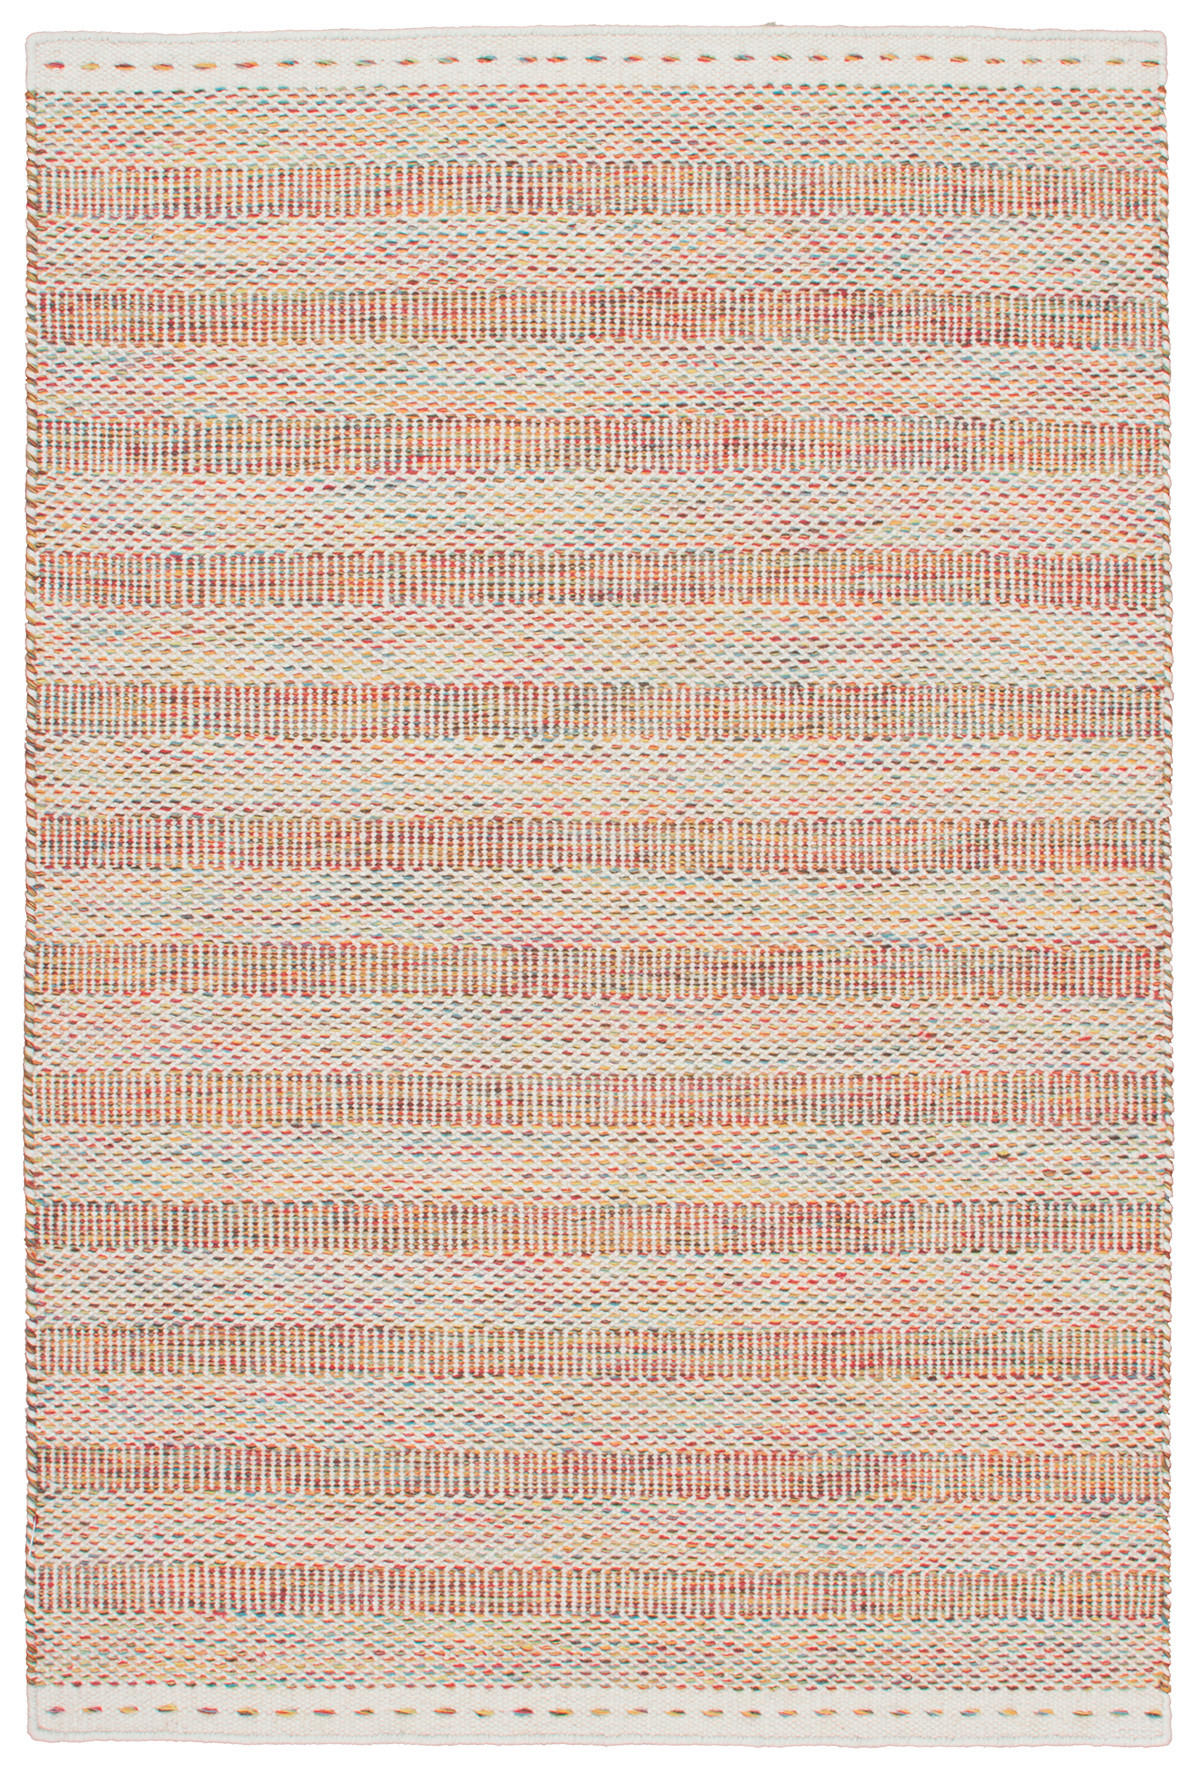 FLACHWEBETEPPICH 80/150 cm  - Multicolor, Natur, Textil (80/150cm) - Novel